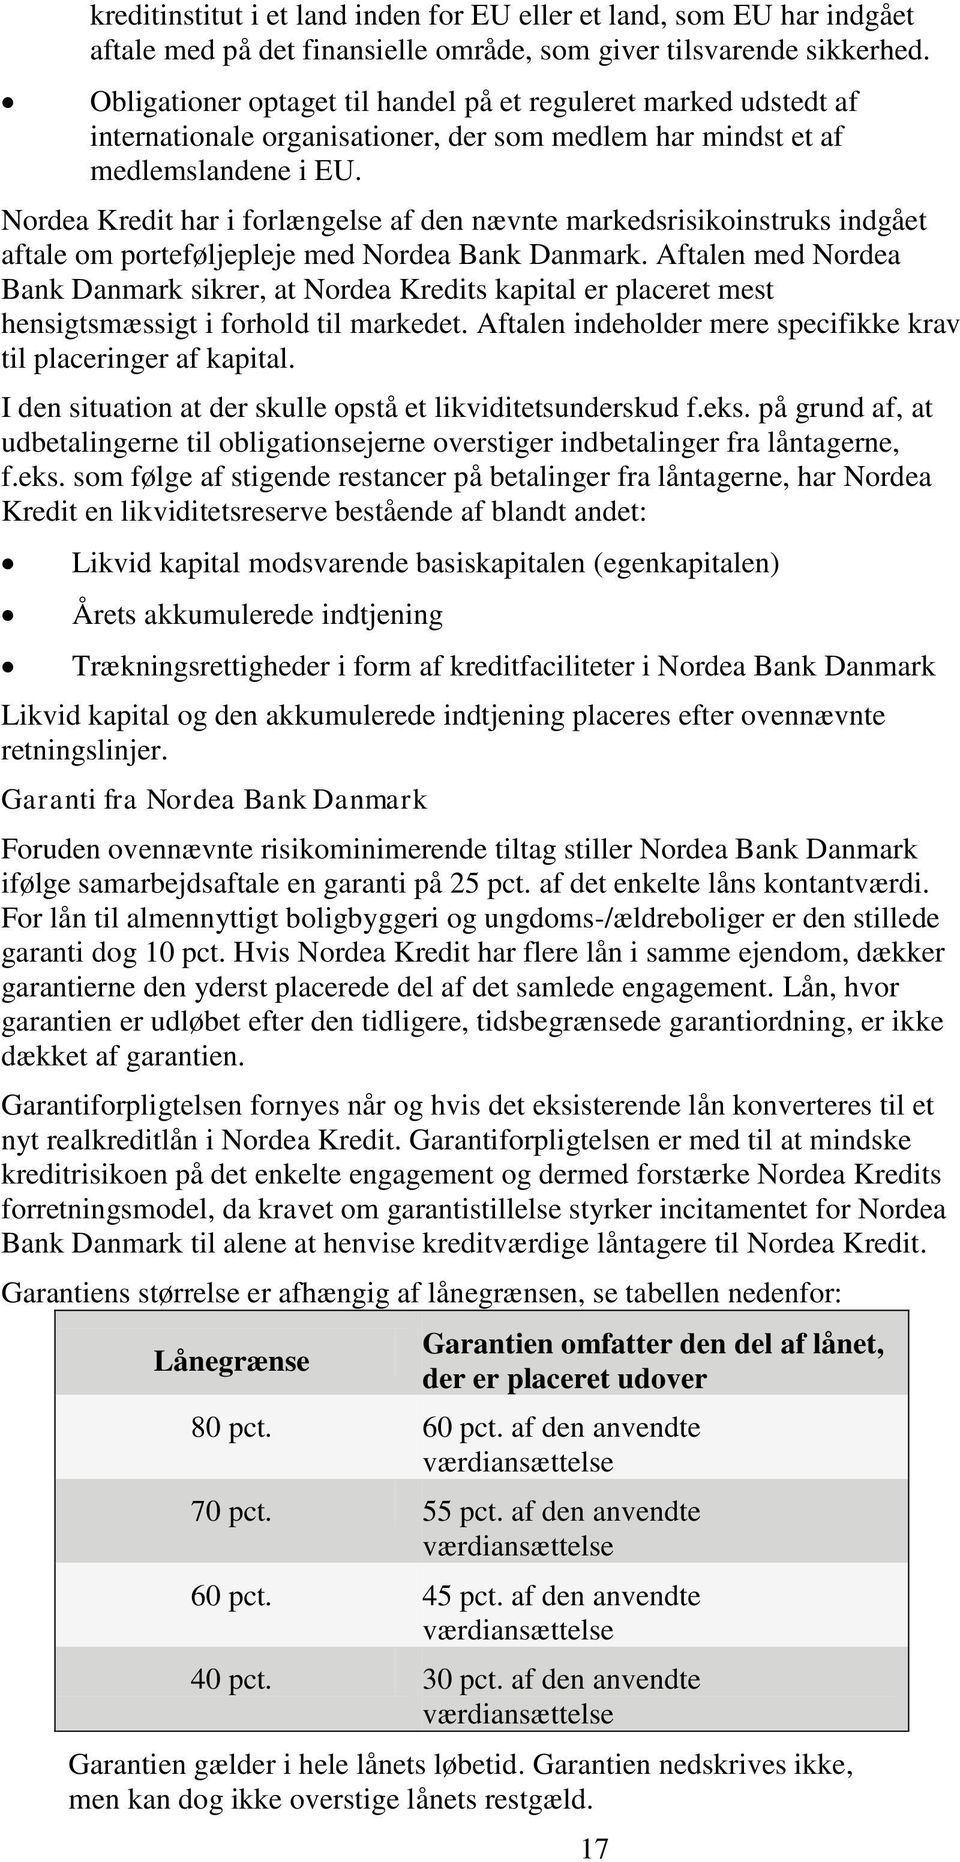 Nordea Kredit har i forlængelse af den nævnte markedsrisikoinstruks indgået aftale om porteføljepleje med Nordea Bank Danmark.